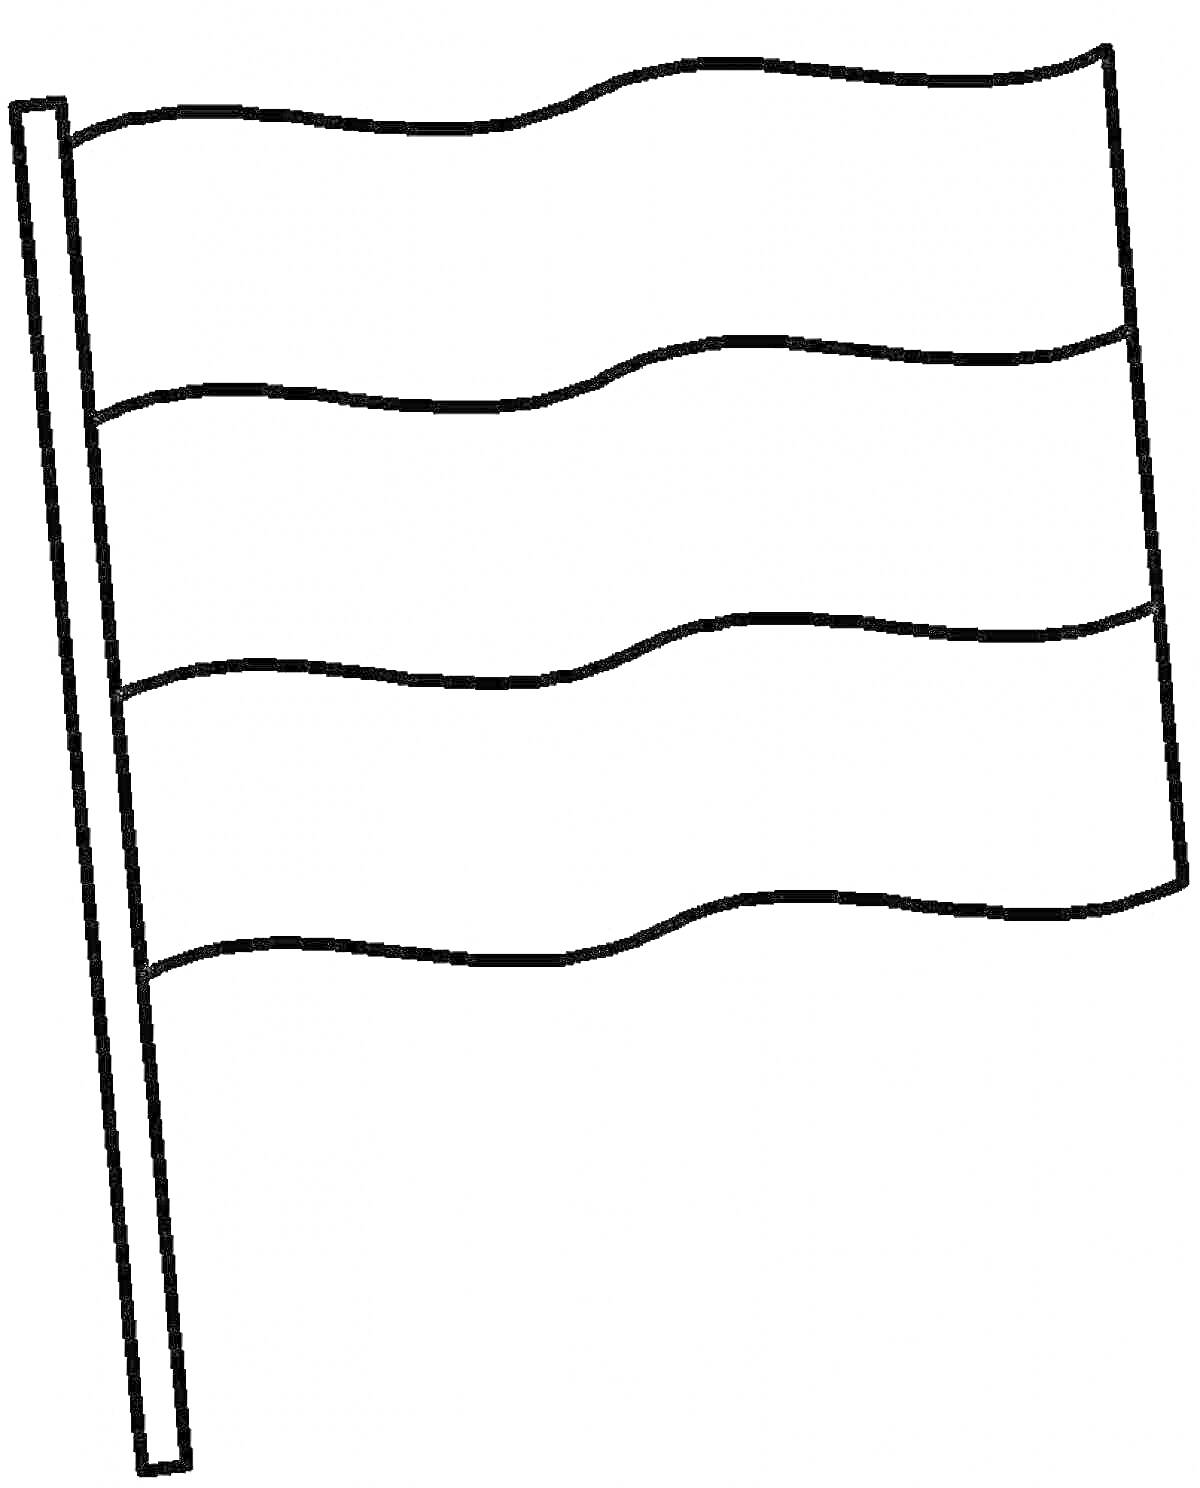 Раскраска Флаг России (чёрно-белое изображение с тремя горизонтальными полосами)